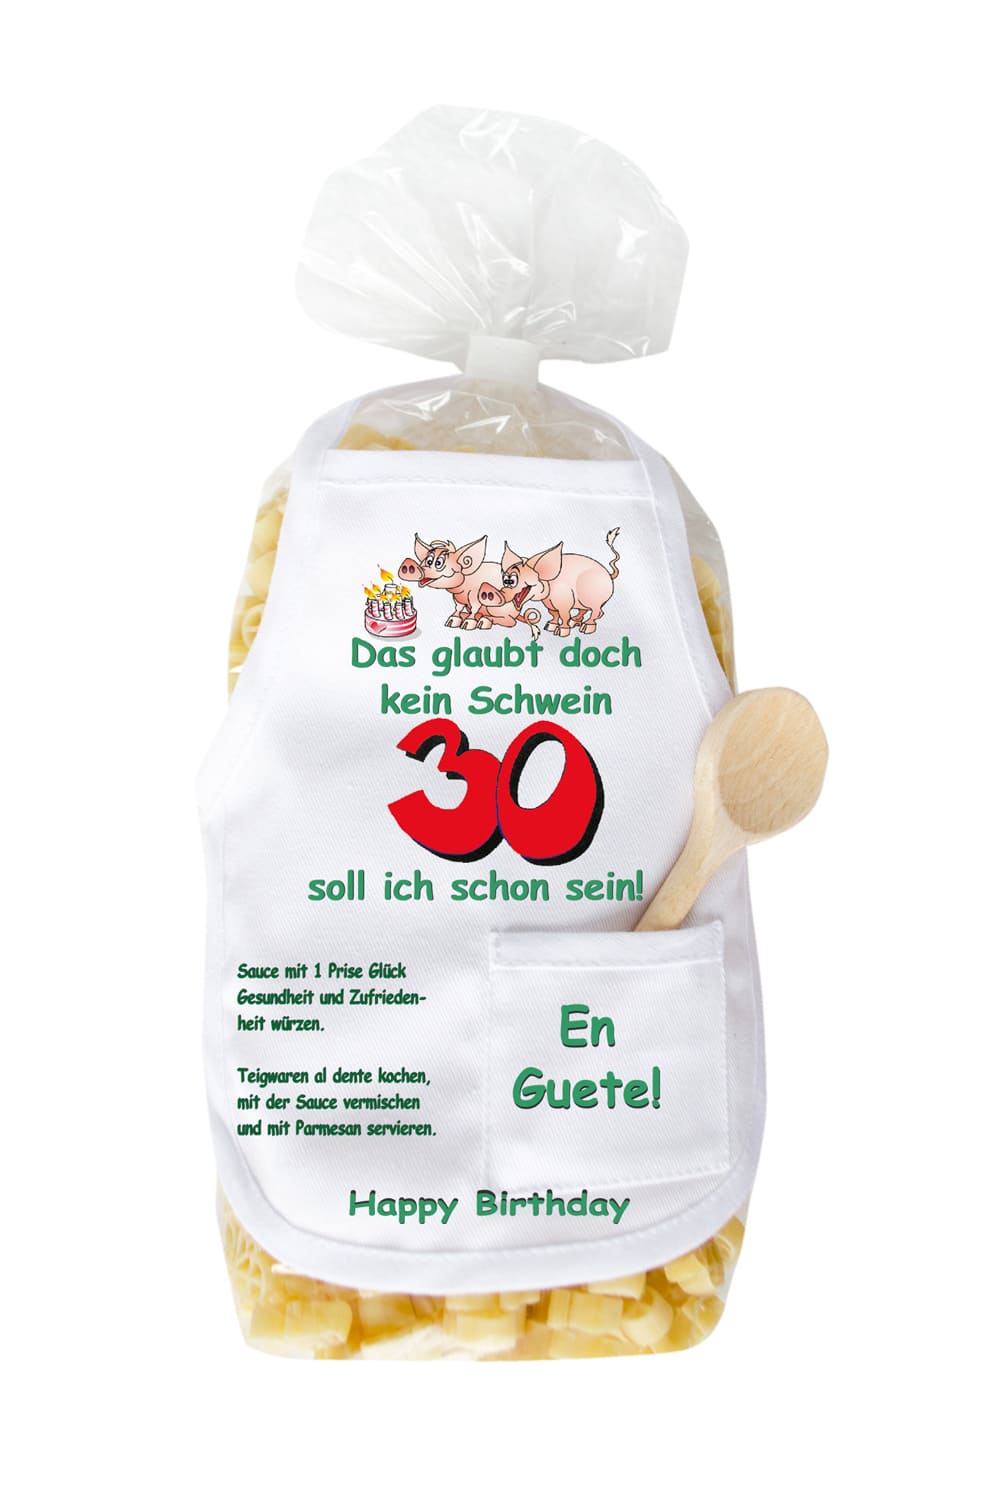 Die Pasta zum 30. Geburtstag sind in Form eines Schweinchen und in einer schoenen Verpackung. Auf der Mini Kochschuerze sind Schweine und eine Torte abgebildet sowie der Spruch: Das glaubt doch kein Schwein, 30 soll ich schon sein. Grossartiges Geburtstagsgeschenk zum 30. Geburtstag. 